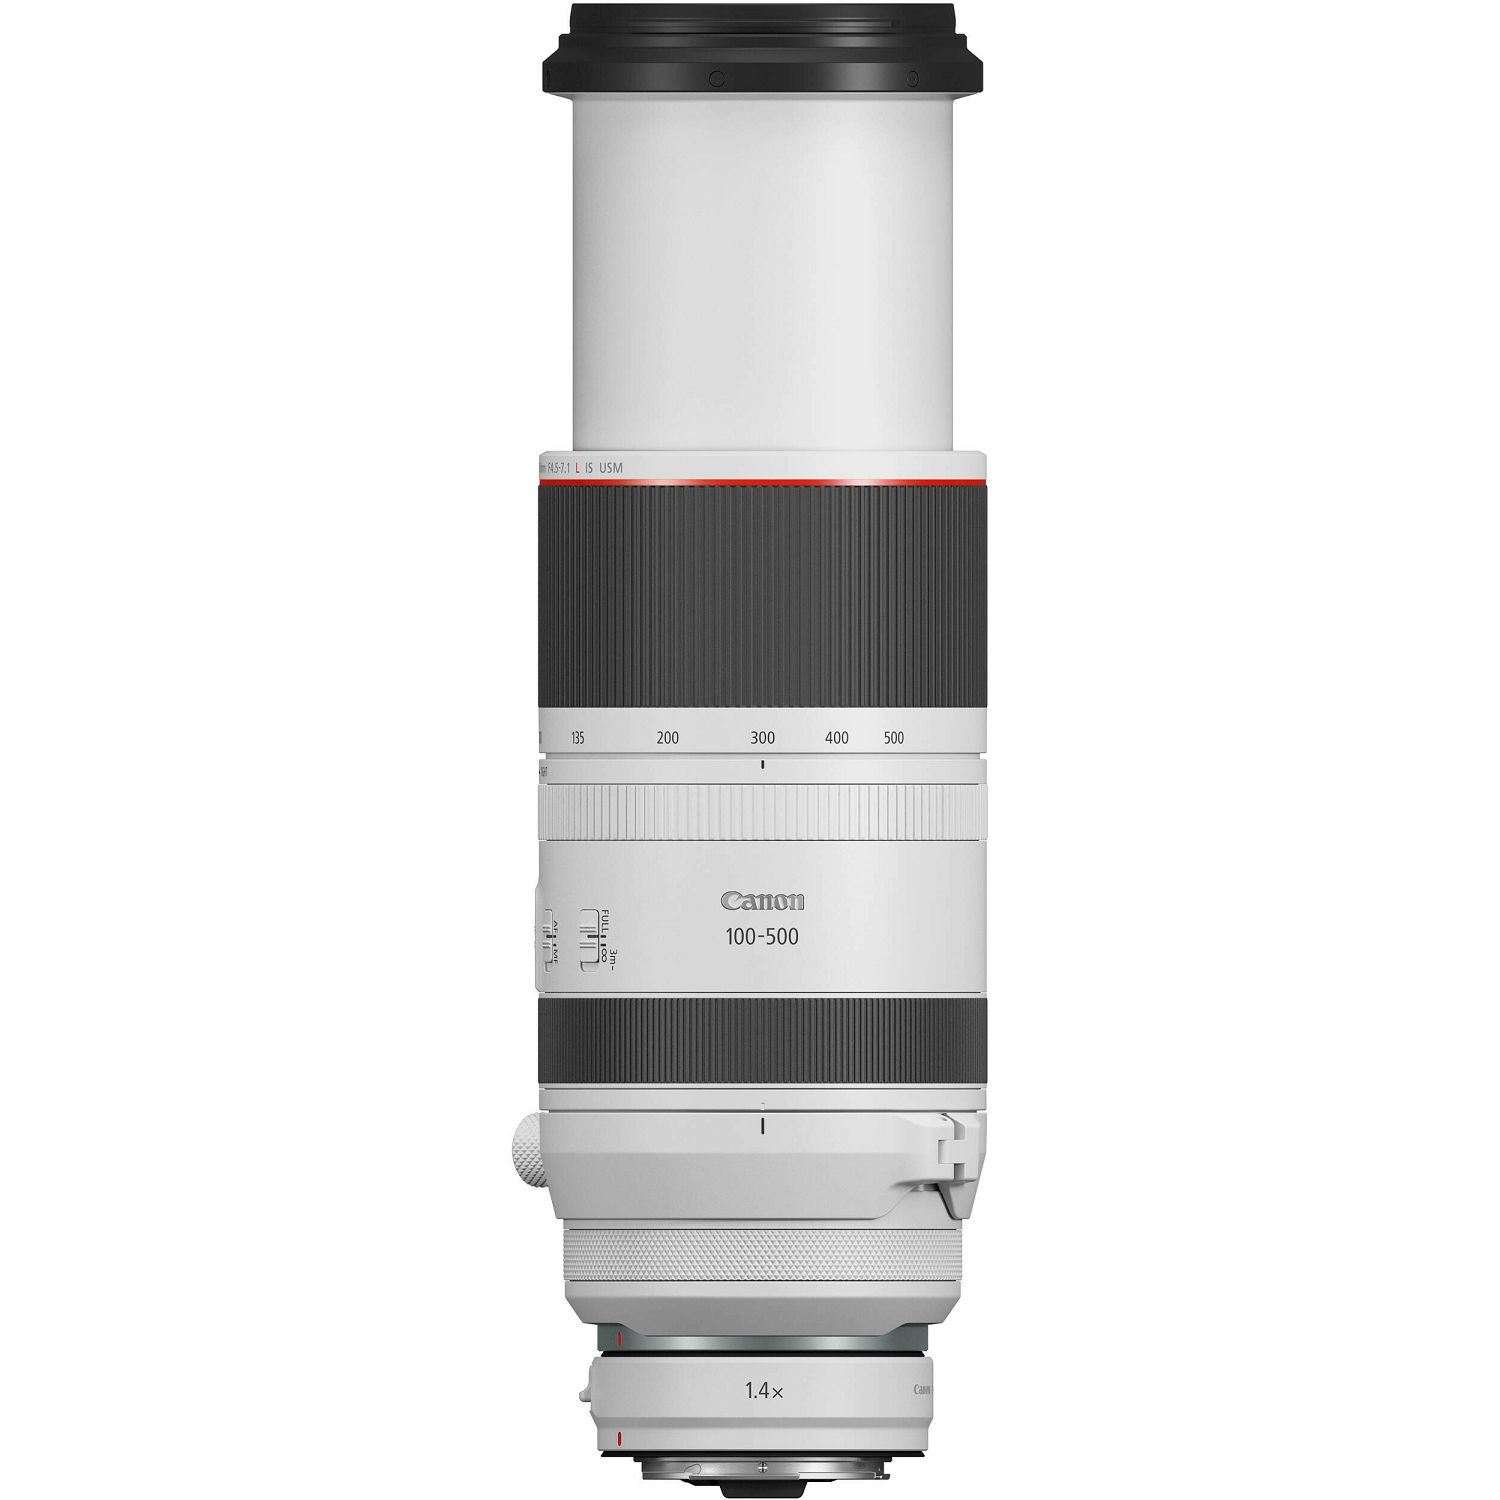 Canon RF 100-500mm f/4.5-7.1L IS USM telefoto objektiv (4112C005AA)